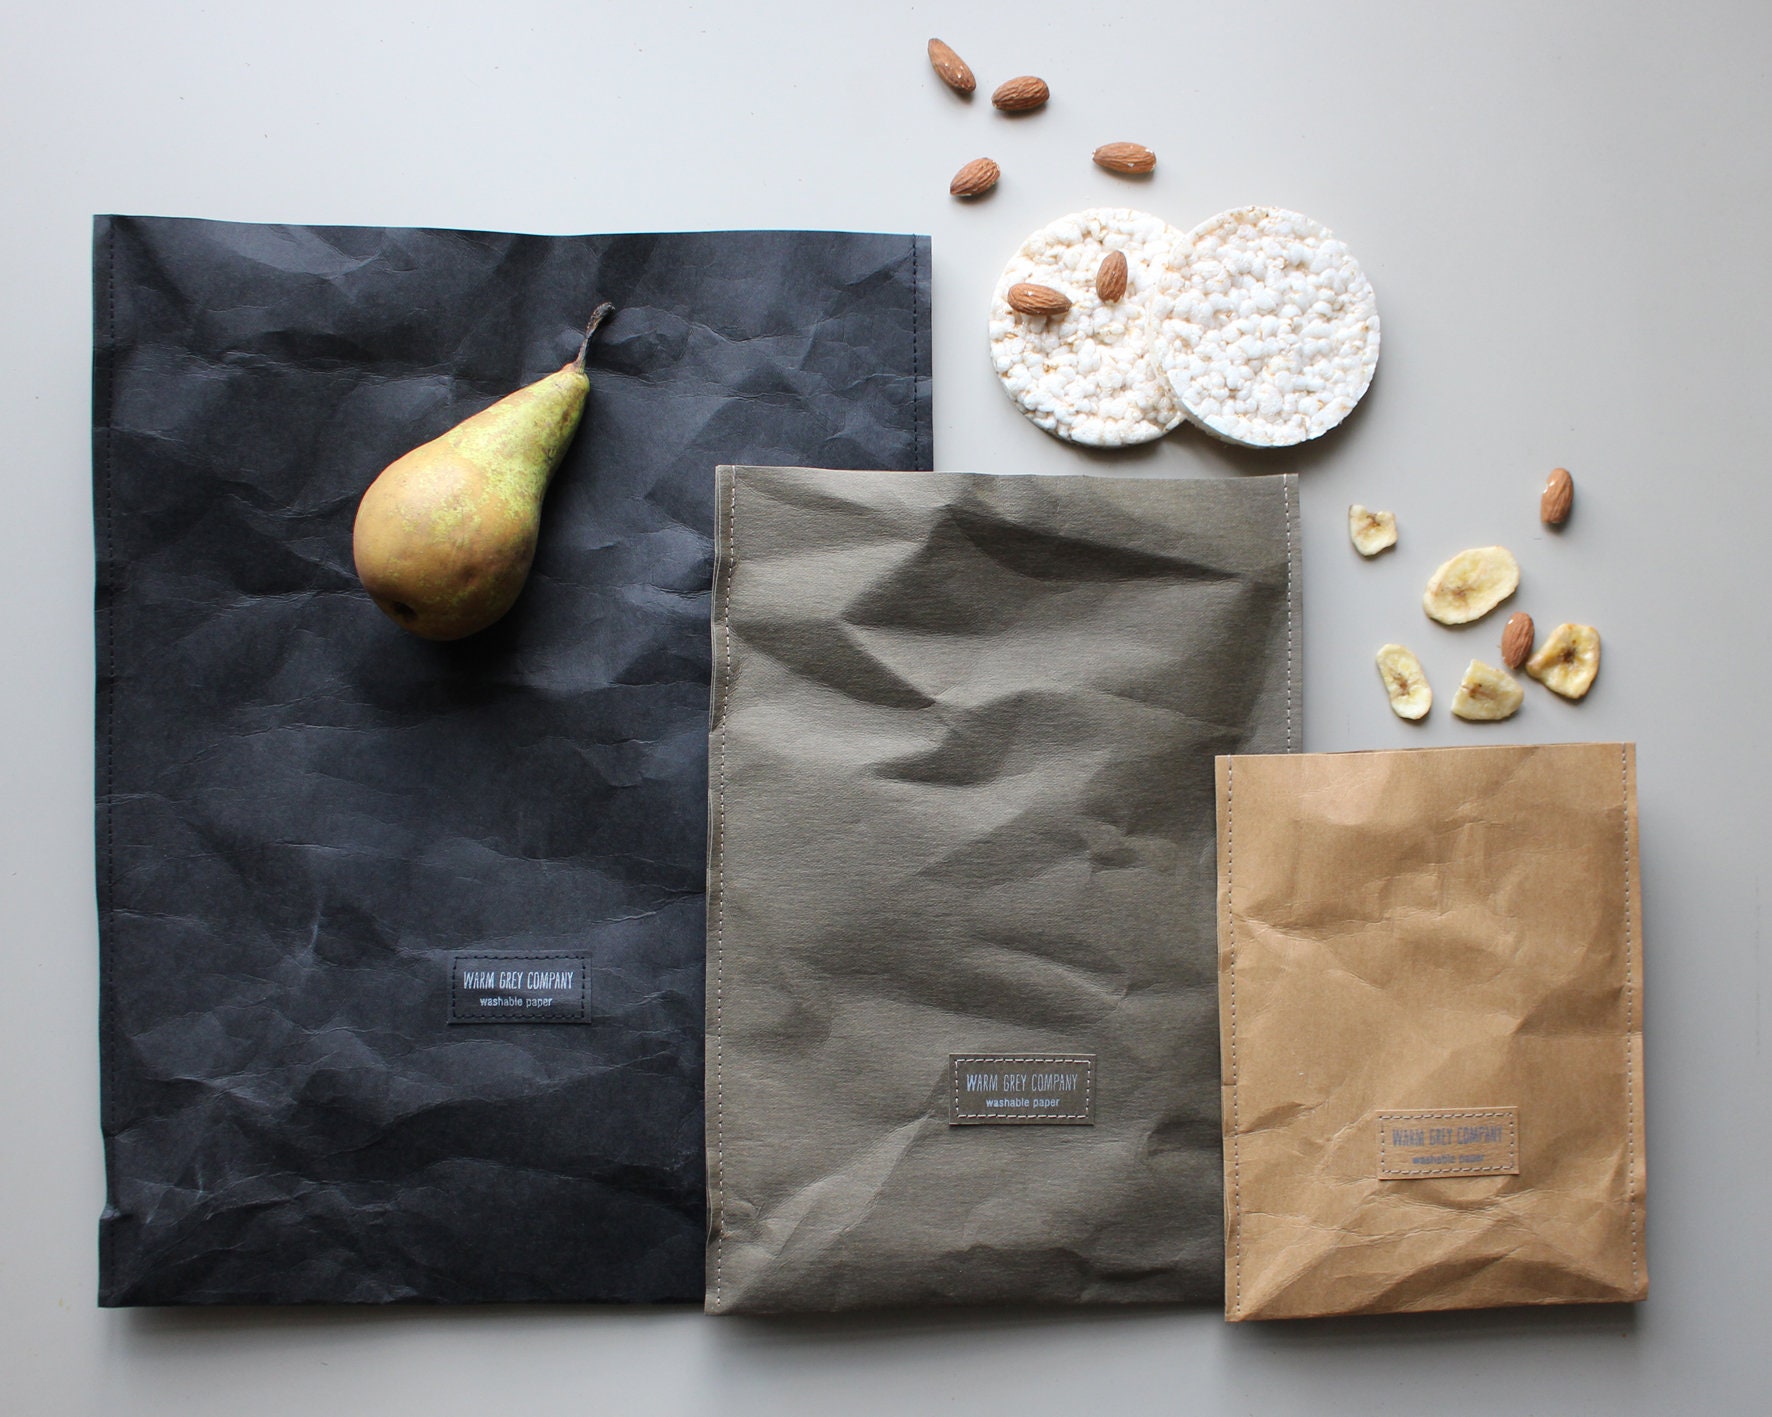 2PCS Washable Kraft Paper Bags Brown Eco-friendly Reusable Paper